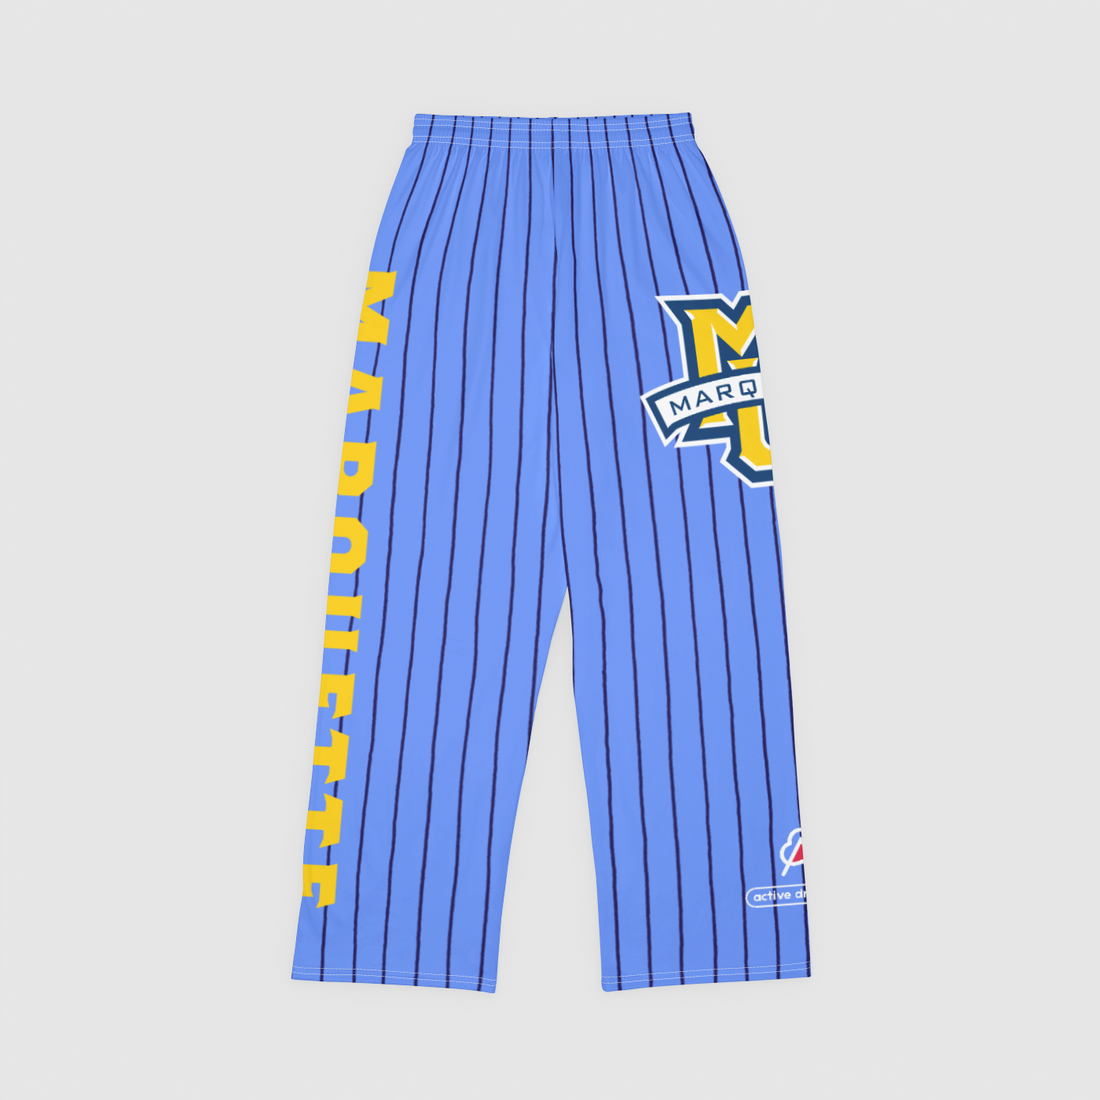 Marquette Pajama Pant